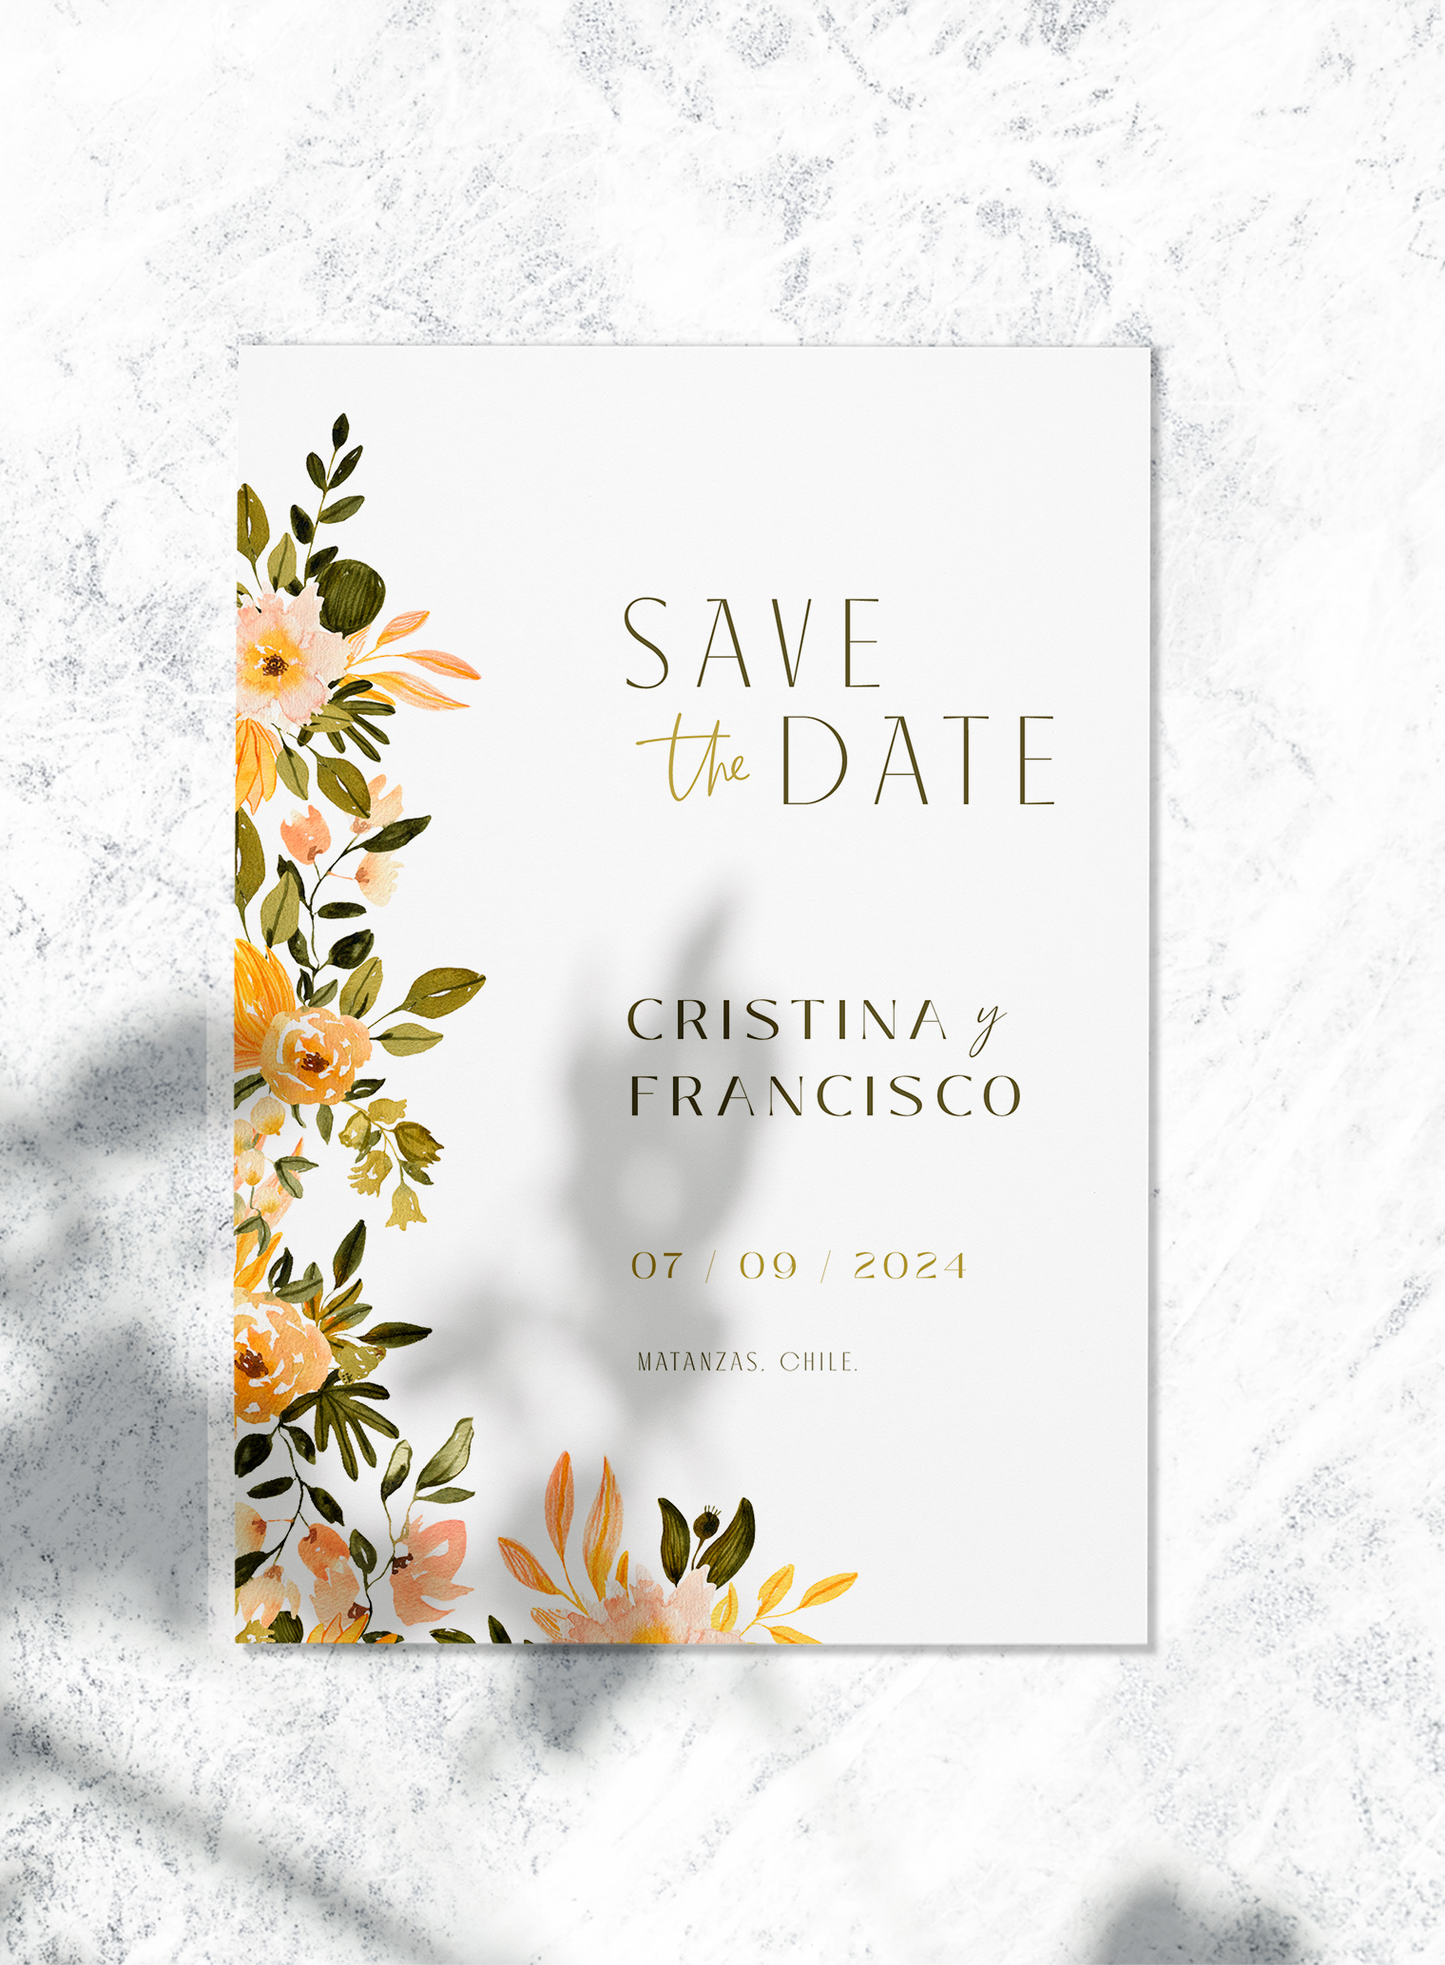 Save the date - Cristina